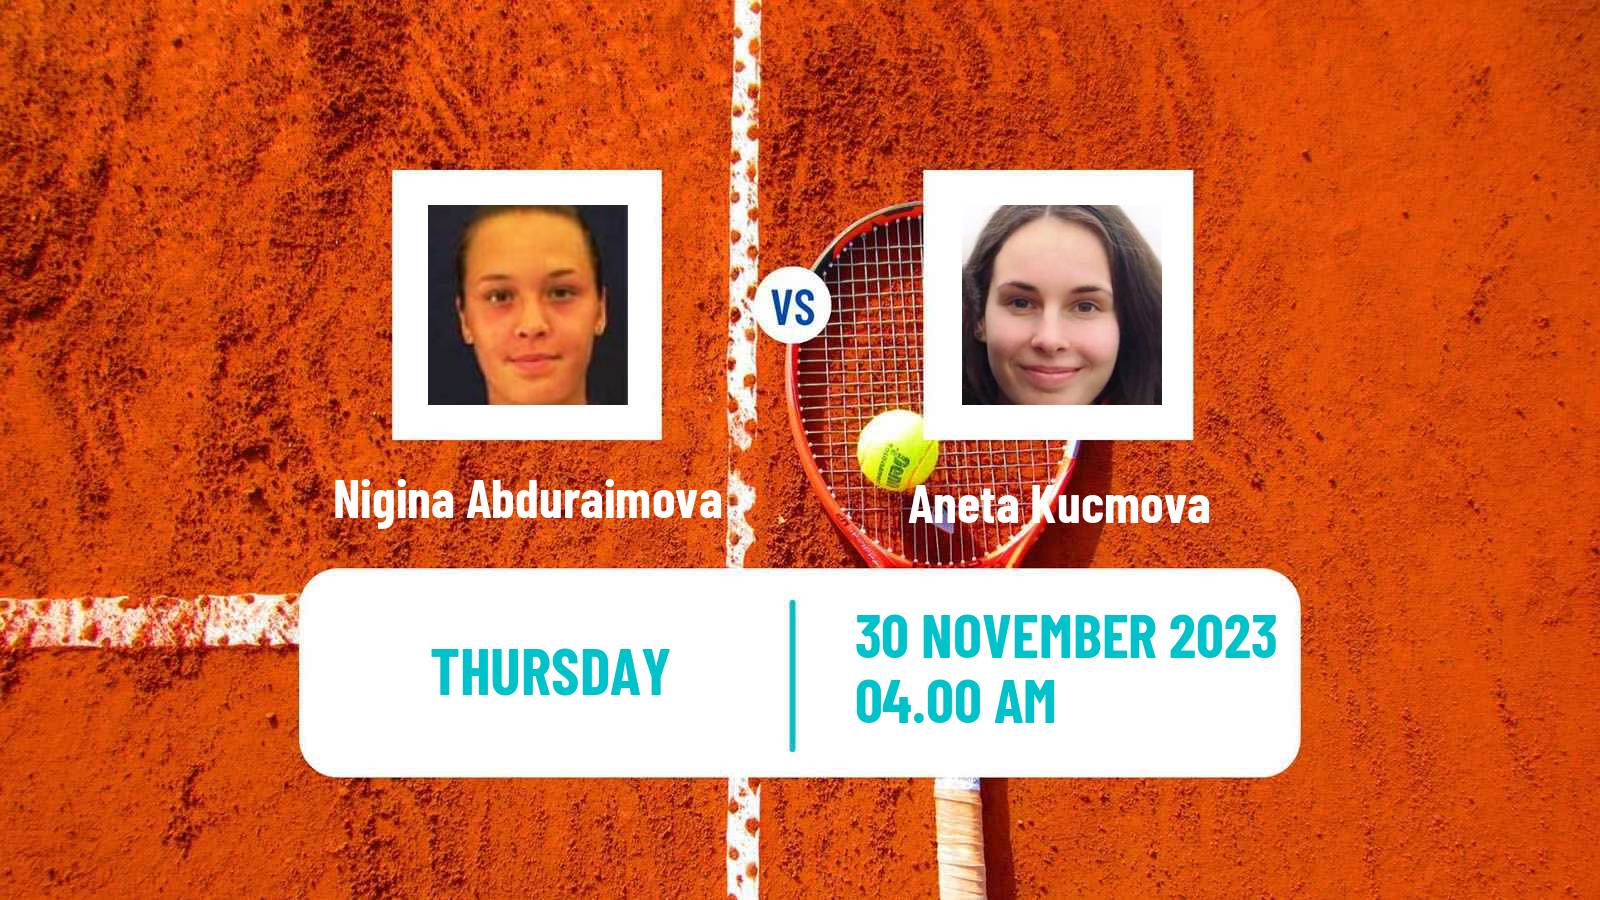 Tennis ITF W60 Trnava 3 Women Nigina Abduraimova - Aneta Kucmova